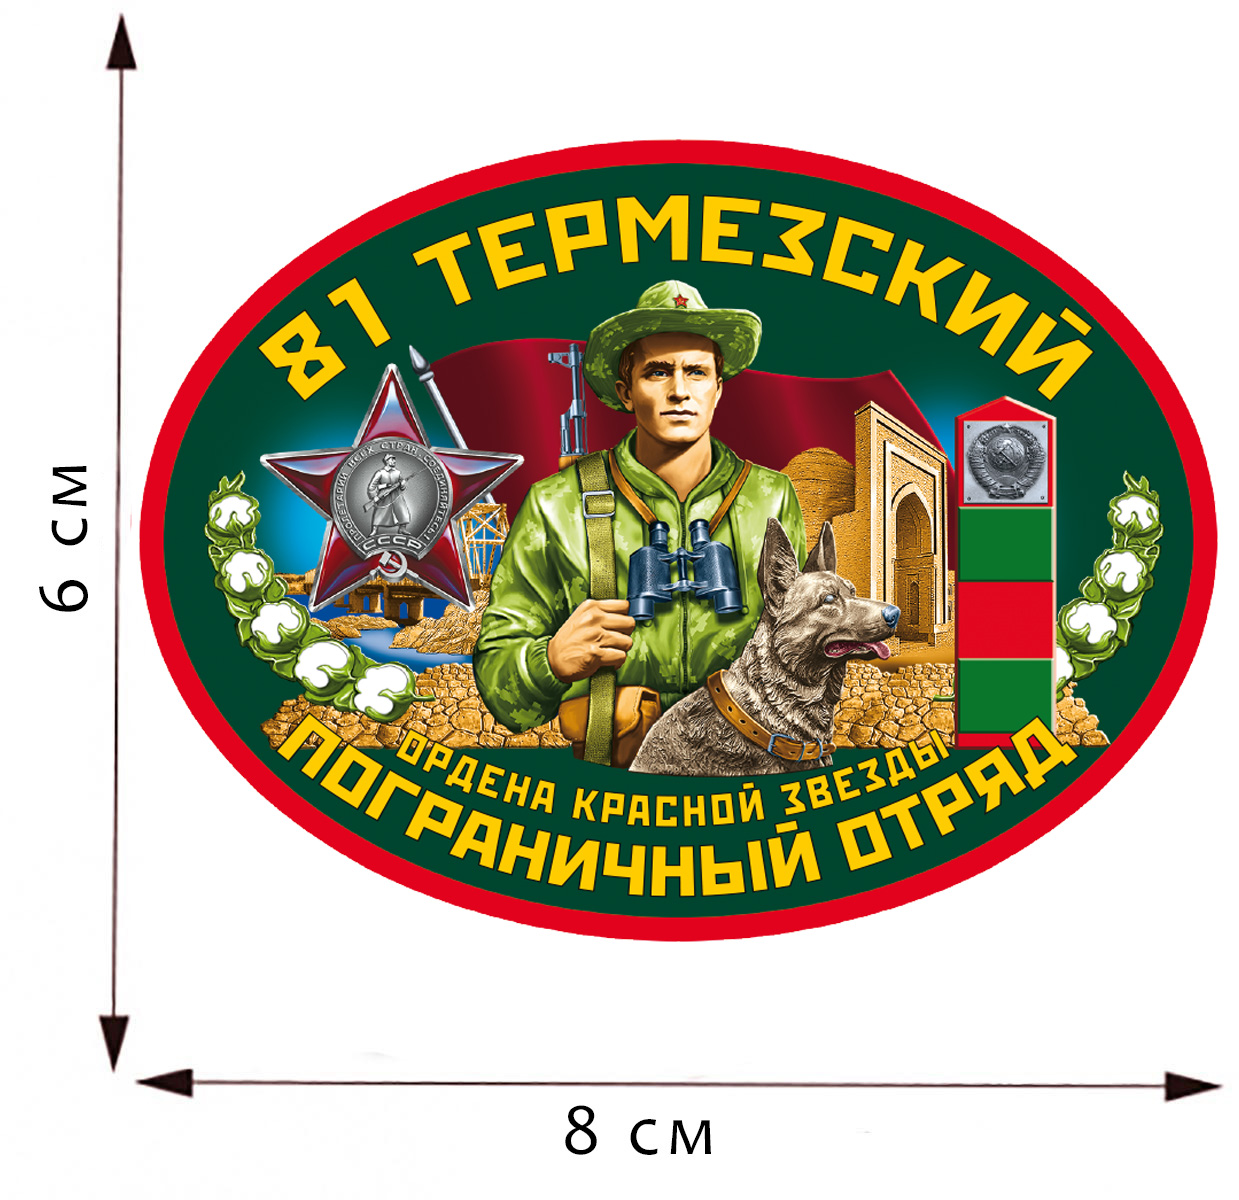 Термотрансфер "81 Термезский пограничный отряд" 